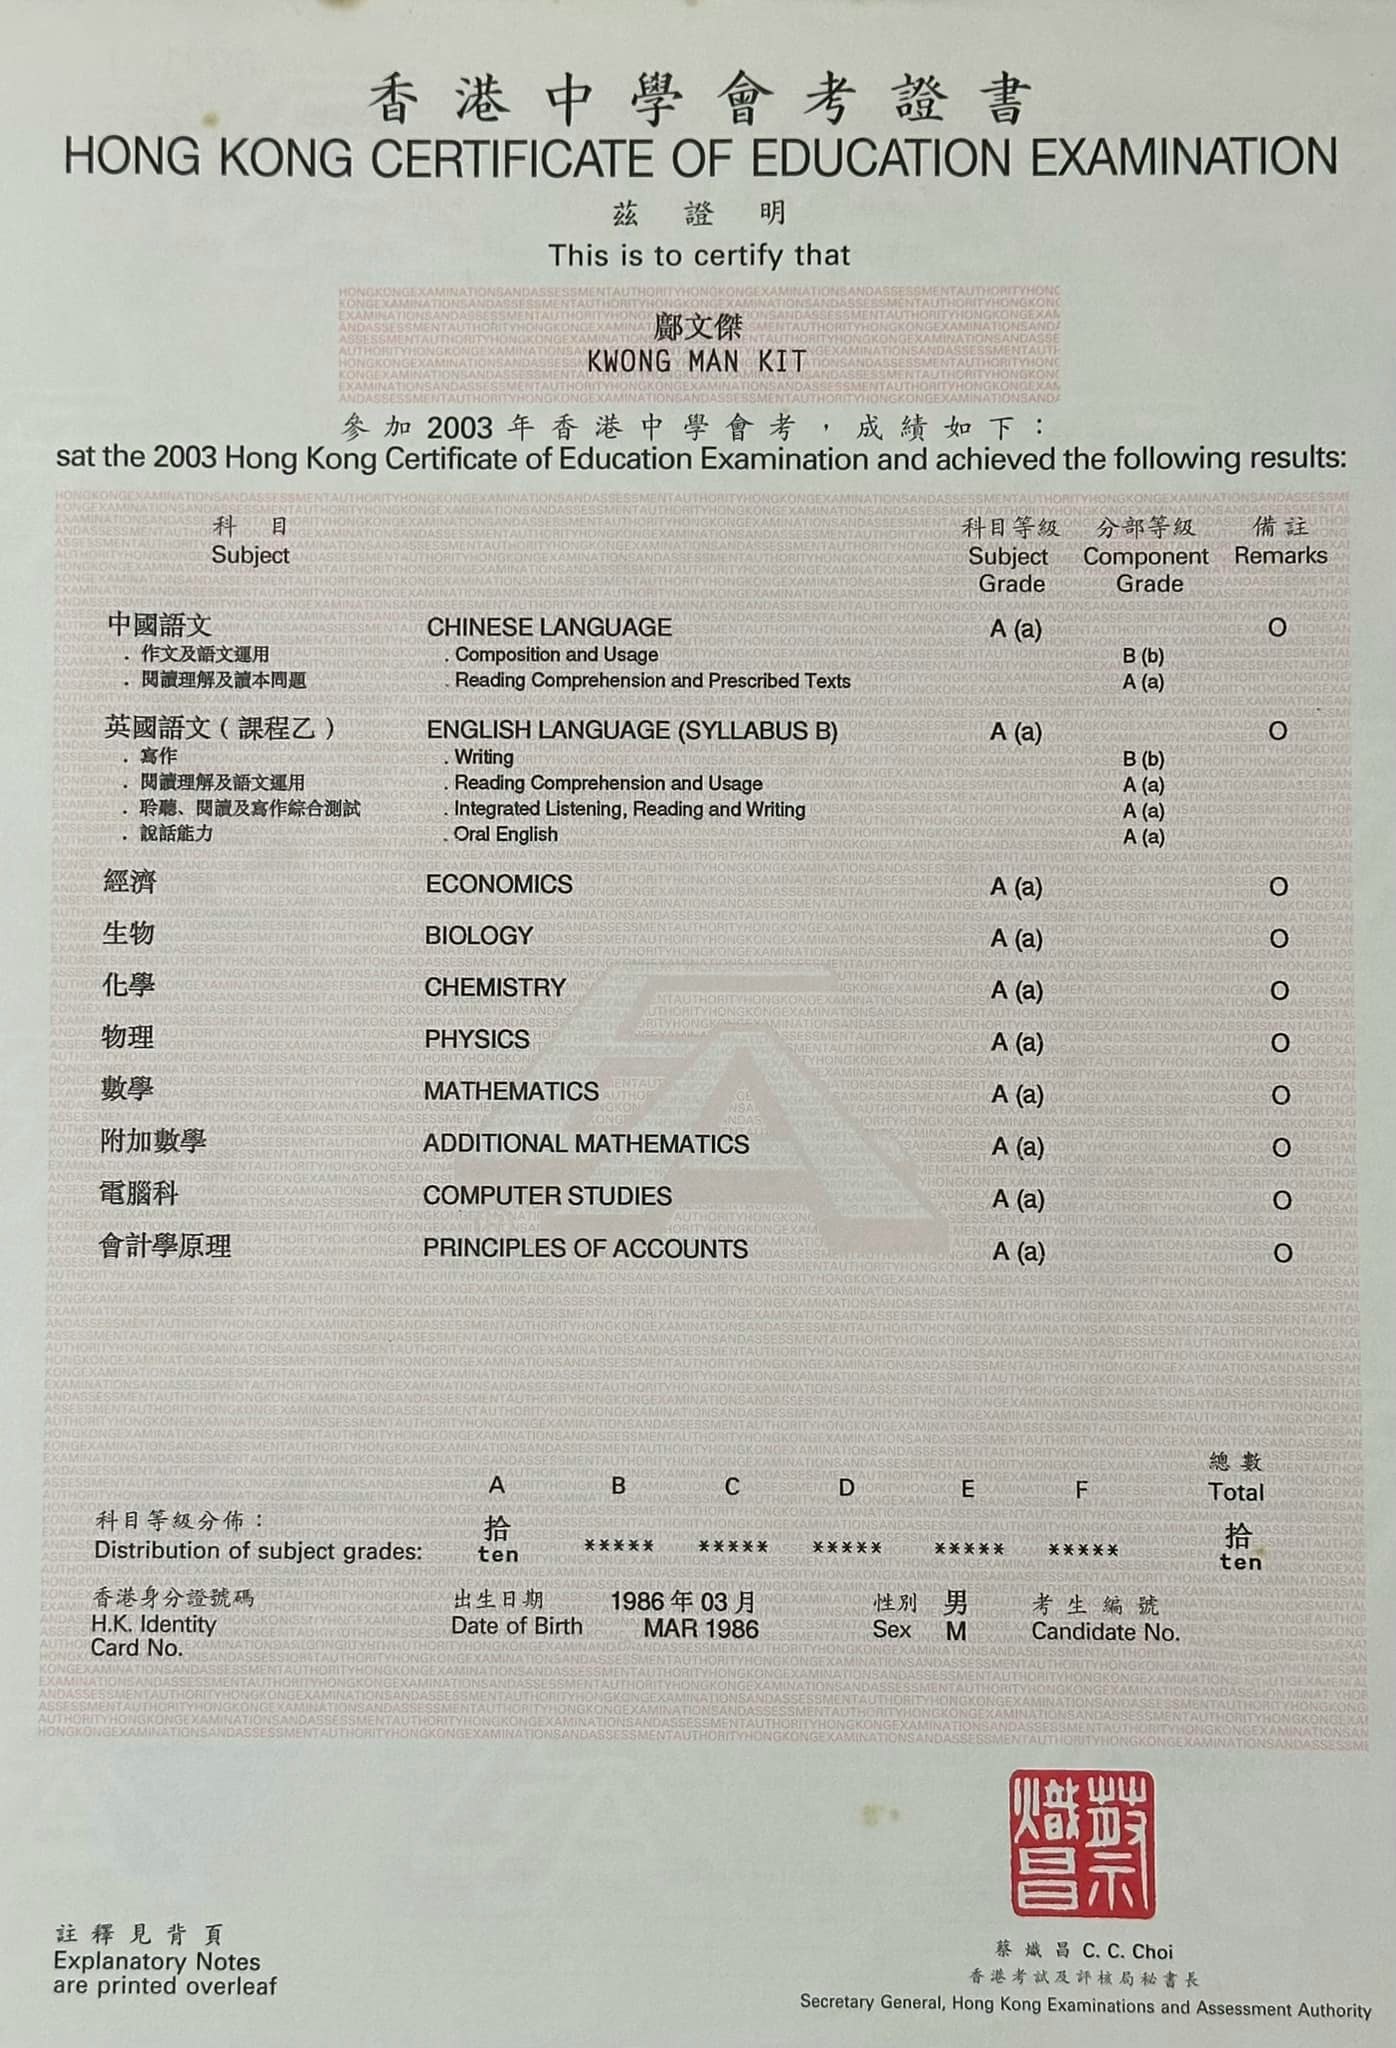 邝文杰上载自己2003年会考10A的成绩单。（facebook群组「90年代回忆 (新版)」图片）